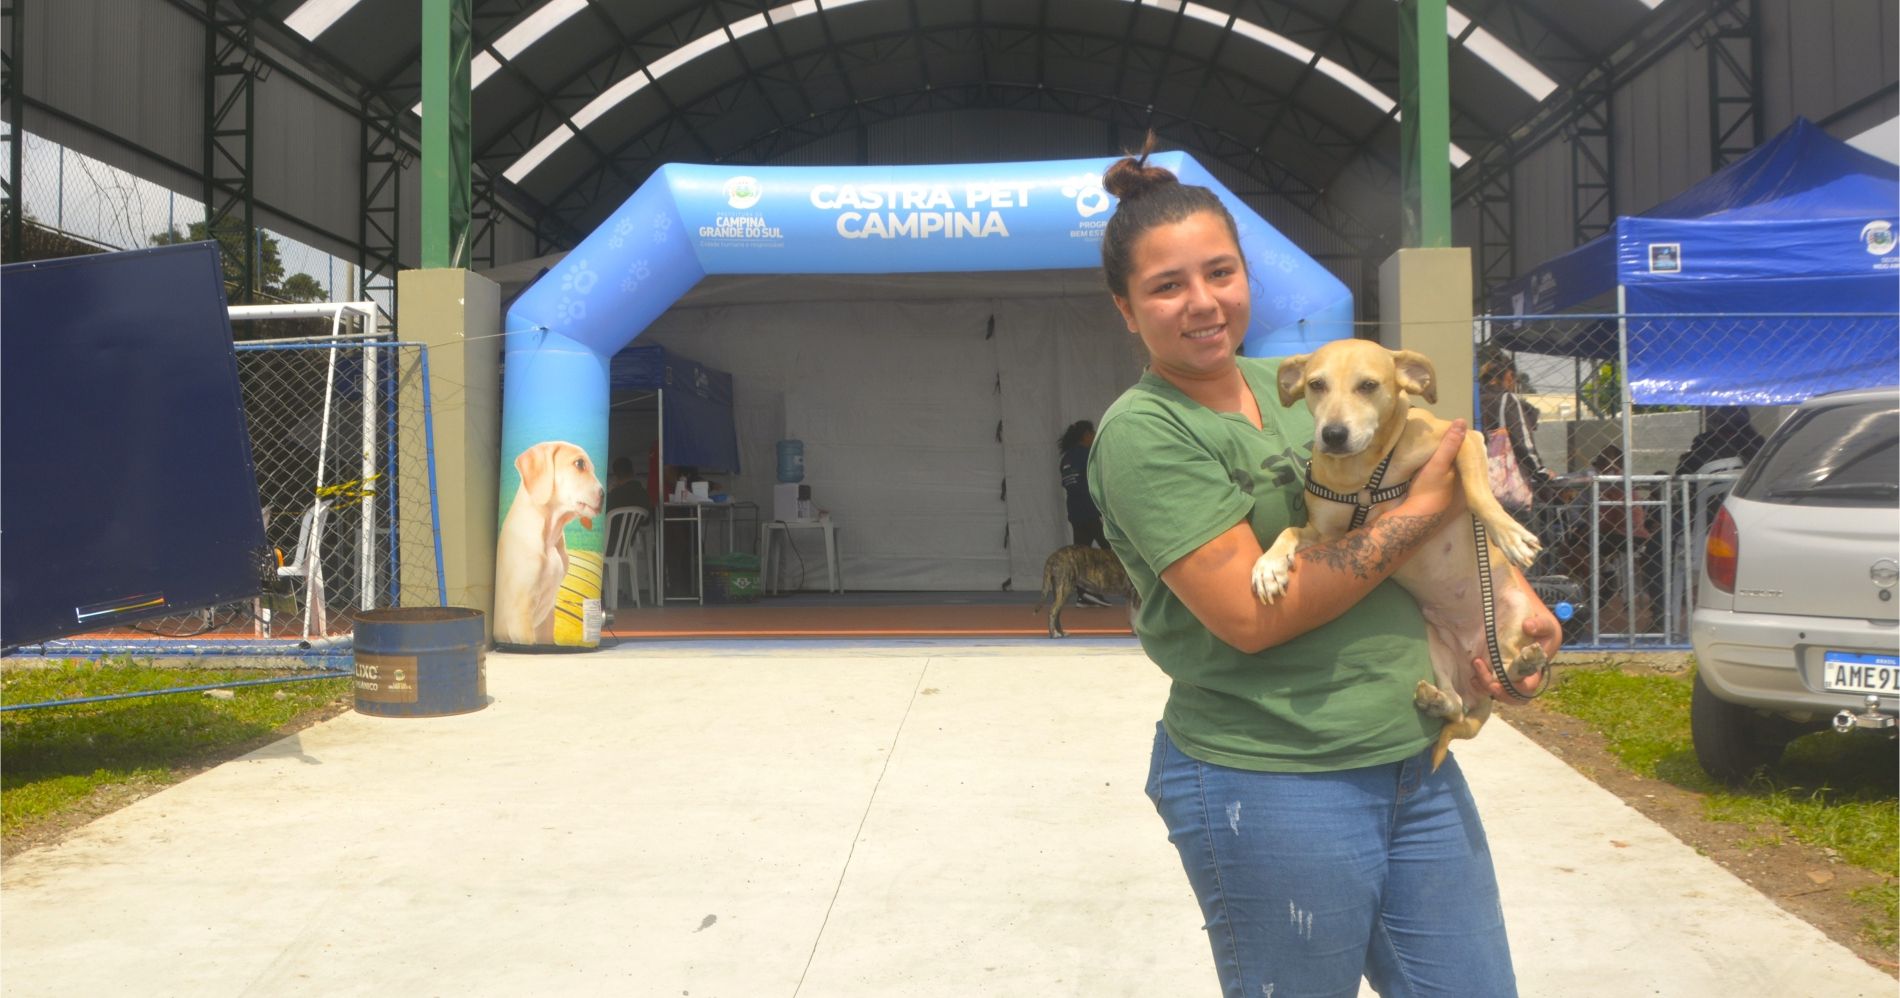 Castrapet Campina realiza evento e castra mais de 200 animais